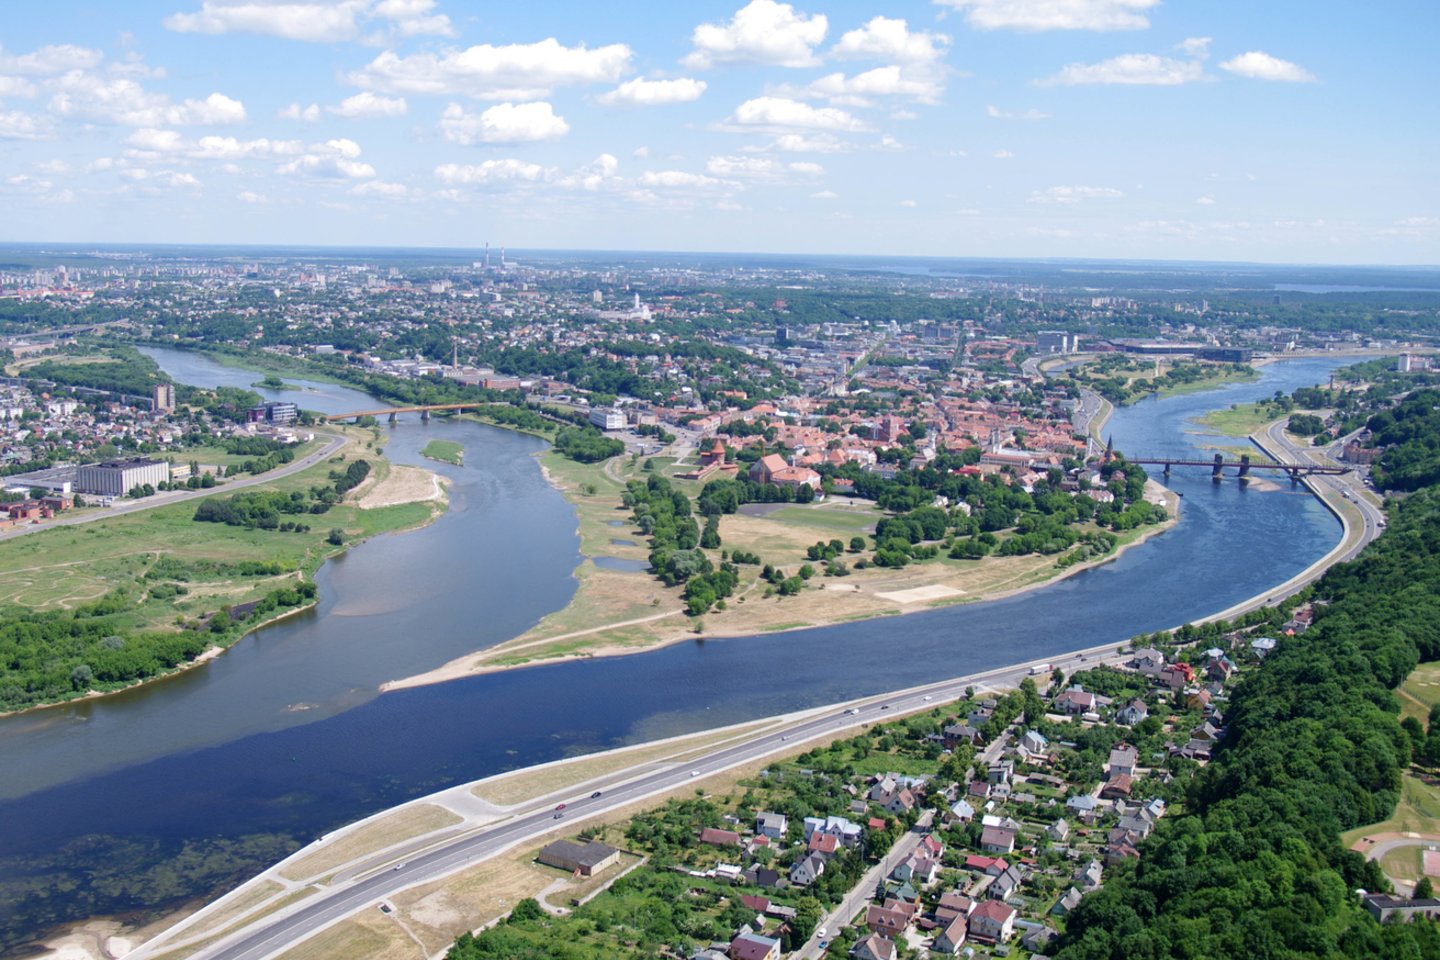   Iš pirmo žvilgsnio Kaunas ir Pitsburgas kartografiniu atžvilgiu atrodo labai panašūs. Nuotraukoje - Kaunas.<br> M. Patašiaus nuotr.